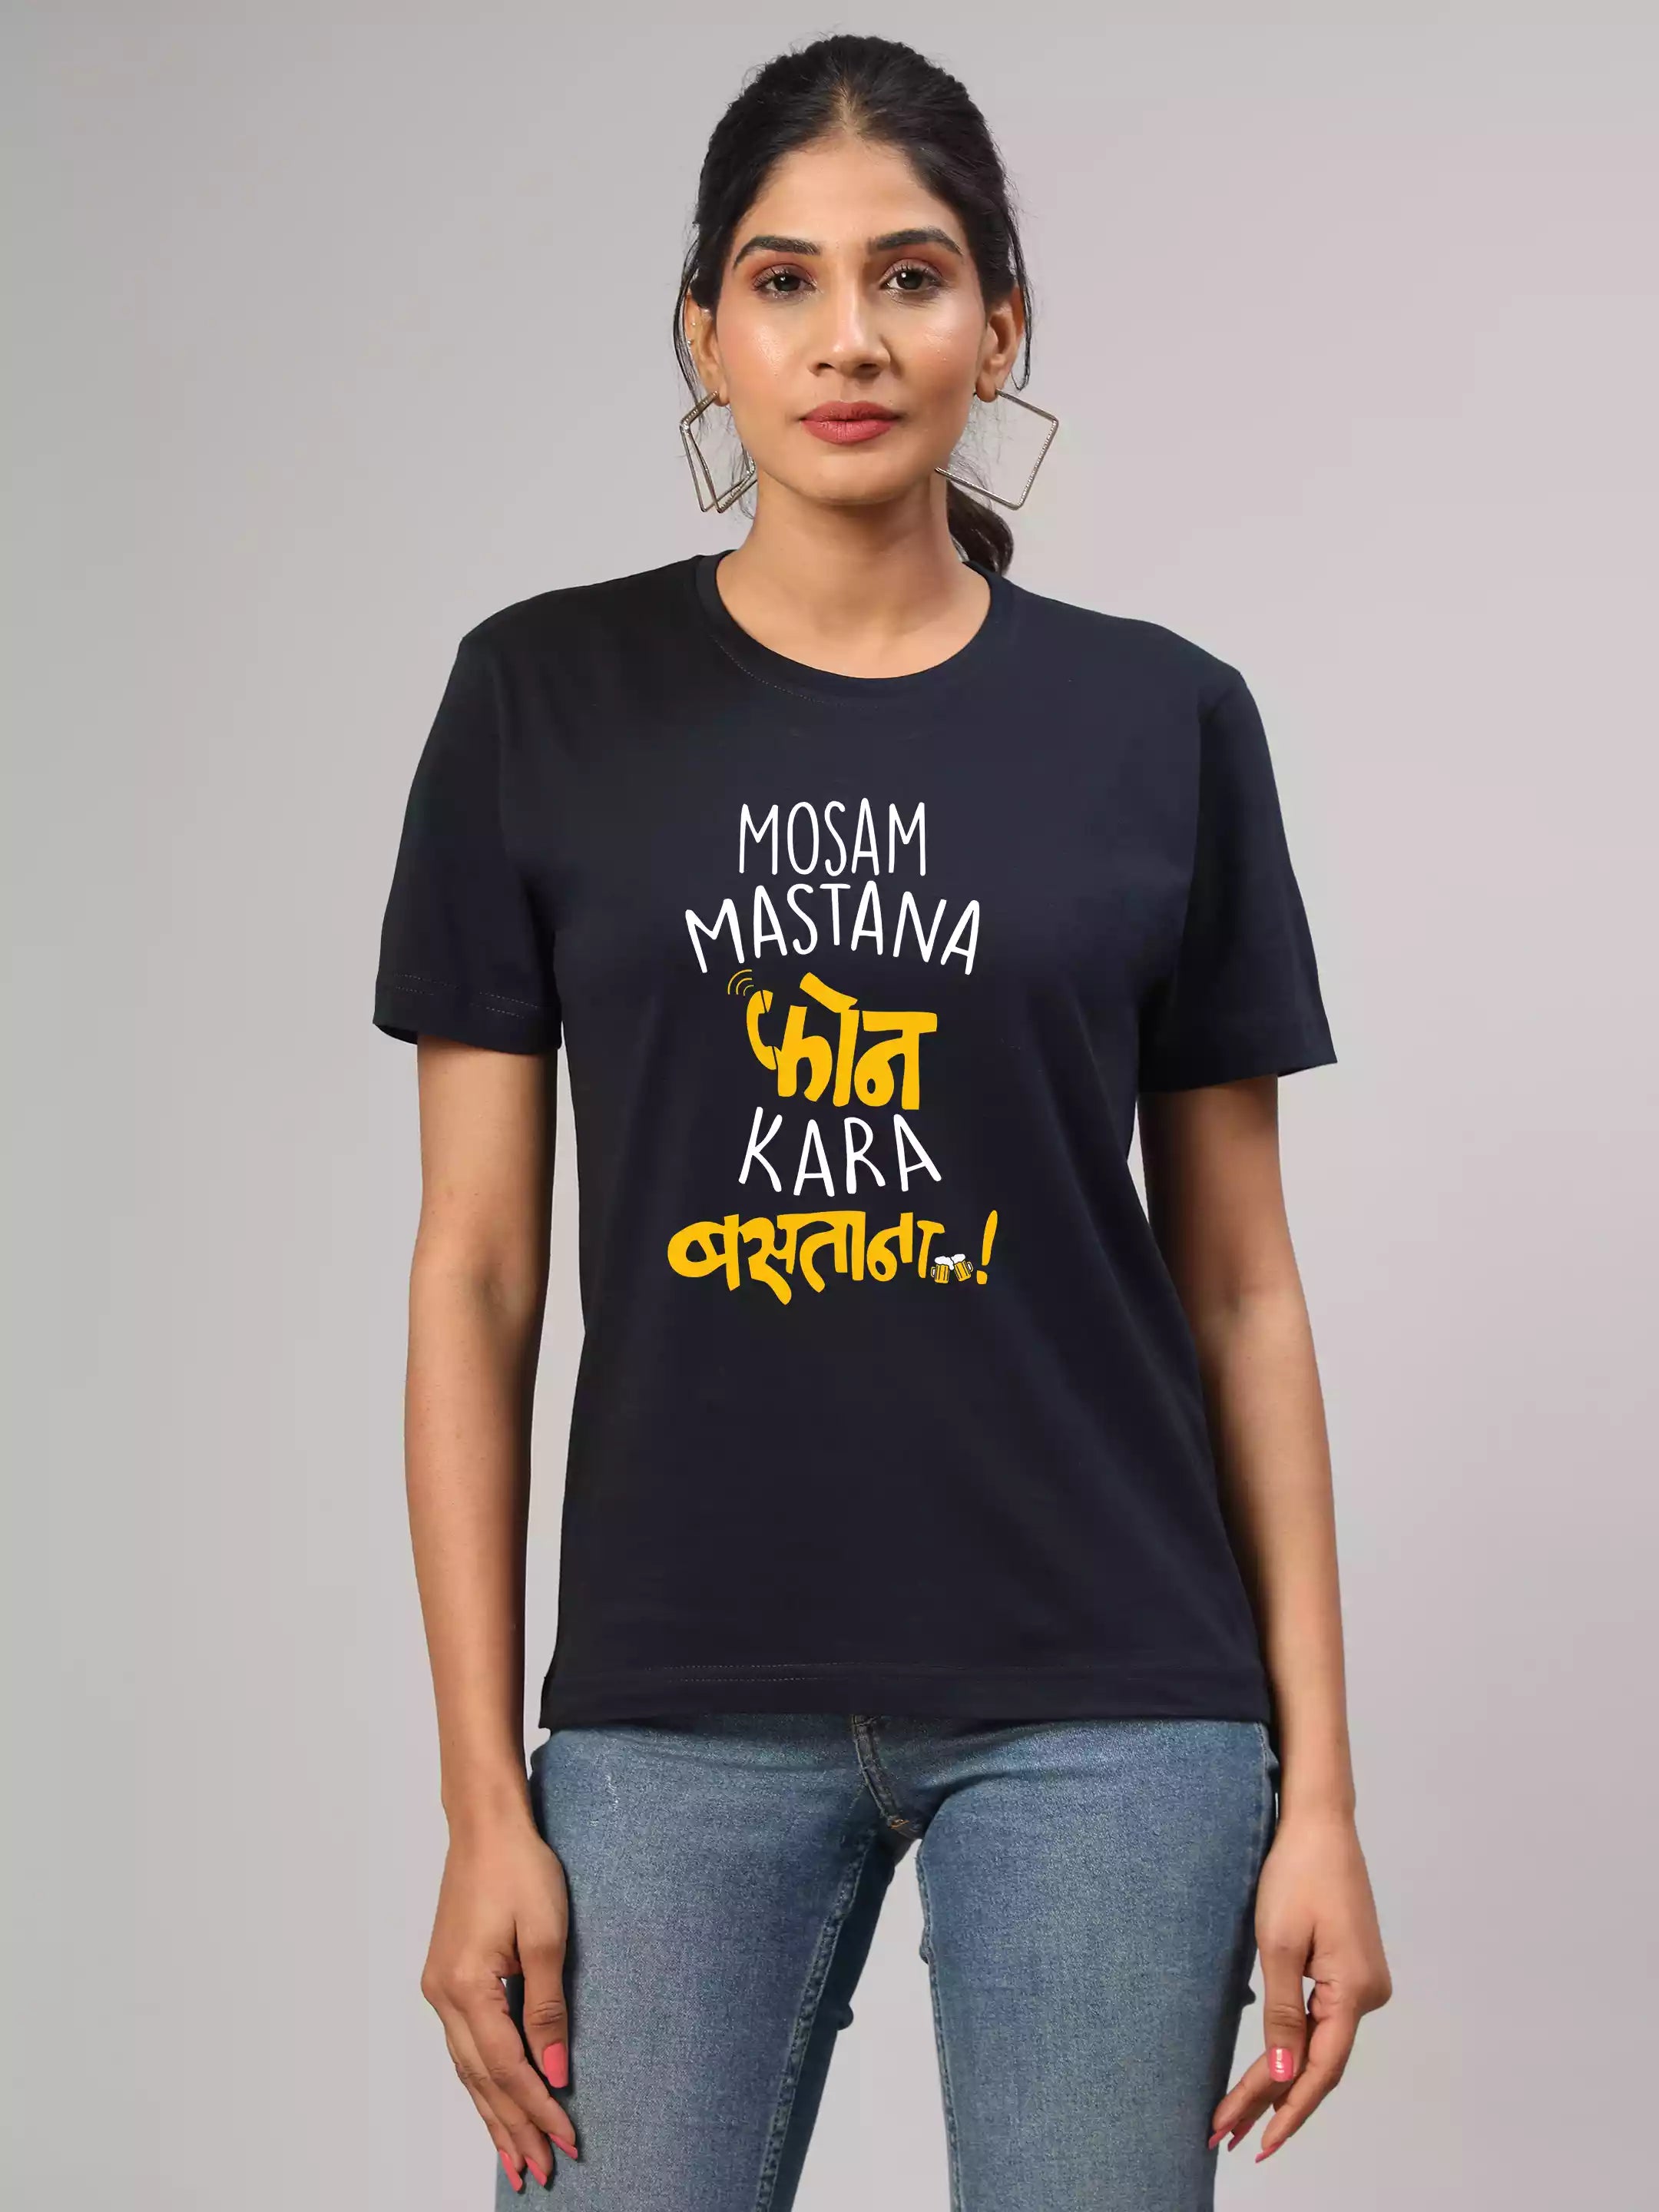 Phone Kara Bastana - Sukhiaatma Unisex Marathi Graphic Printed Navy blue T-shirt